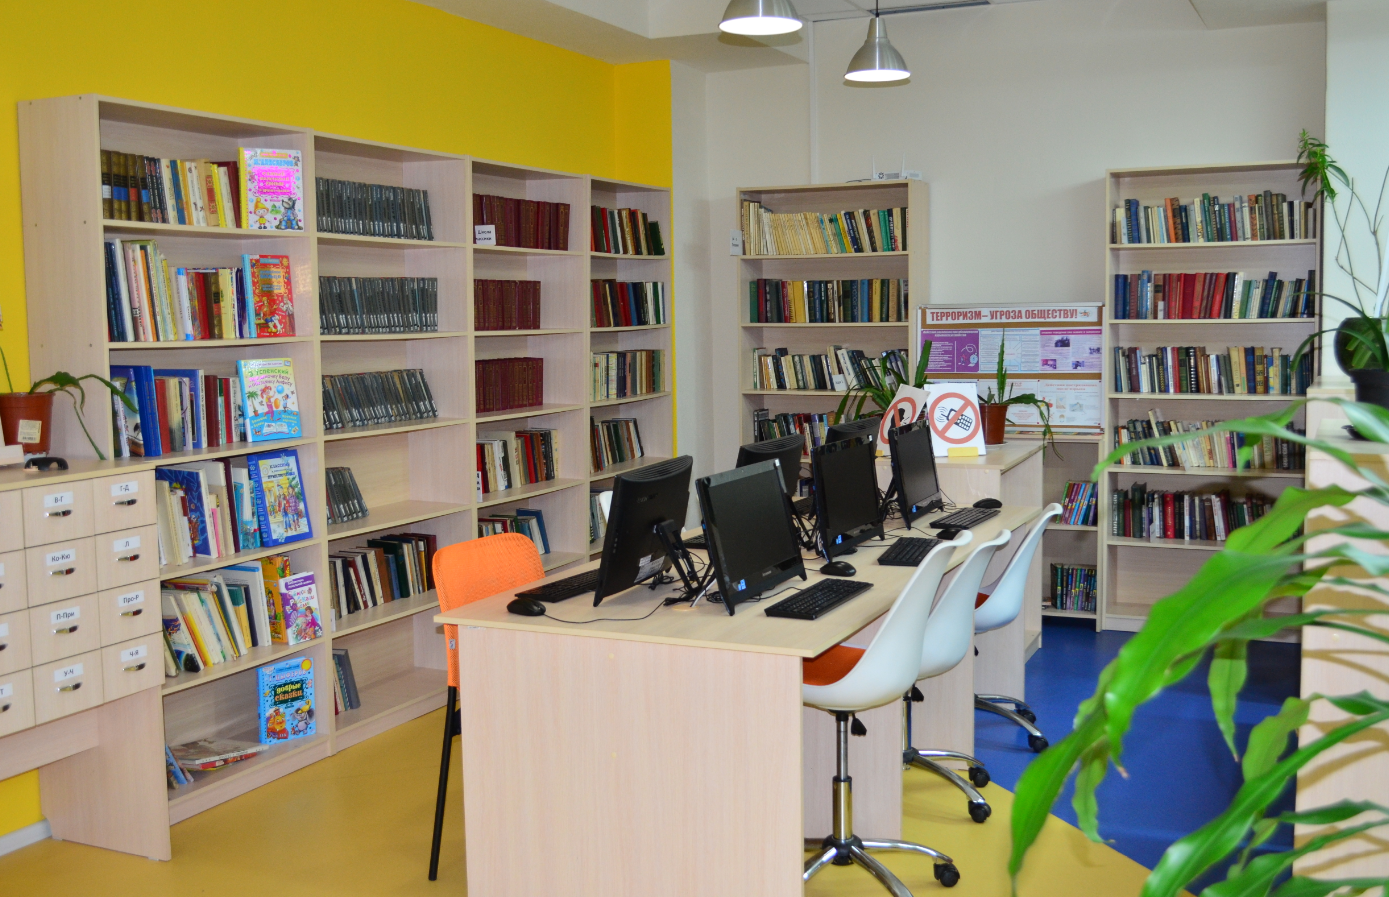 Представители Централизованной библиотечной системы городского округа Щербинка подготовят литературную гостиную. Фото: официальный сайт ЦБС Щербинки